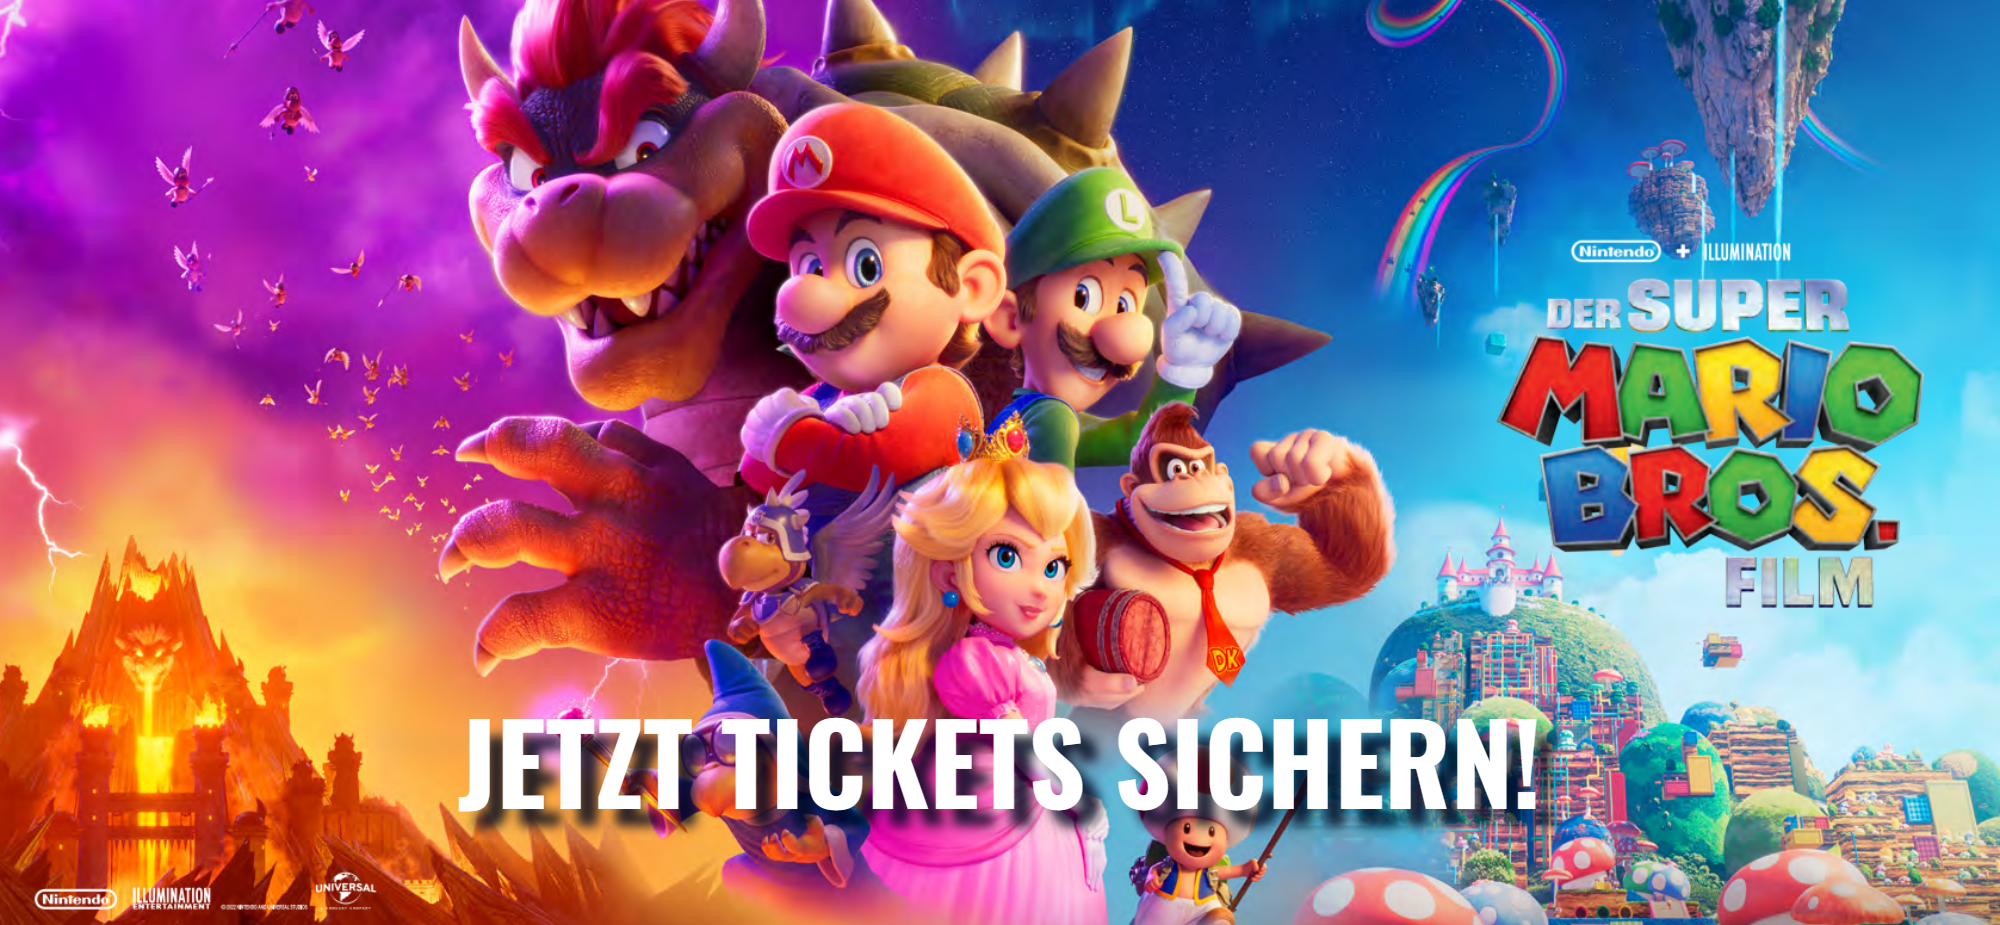 Der Super Mario Bros. Film - jetzt Tickets sichern!